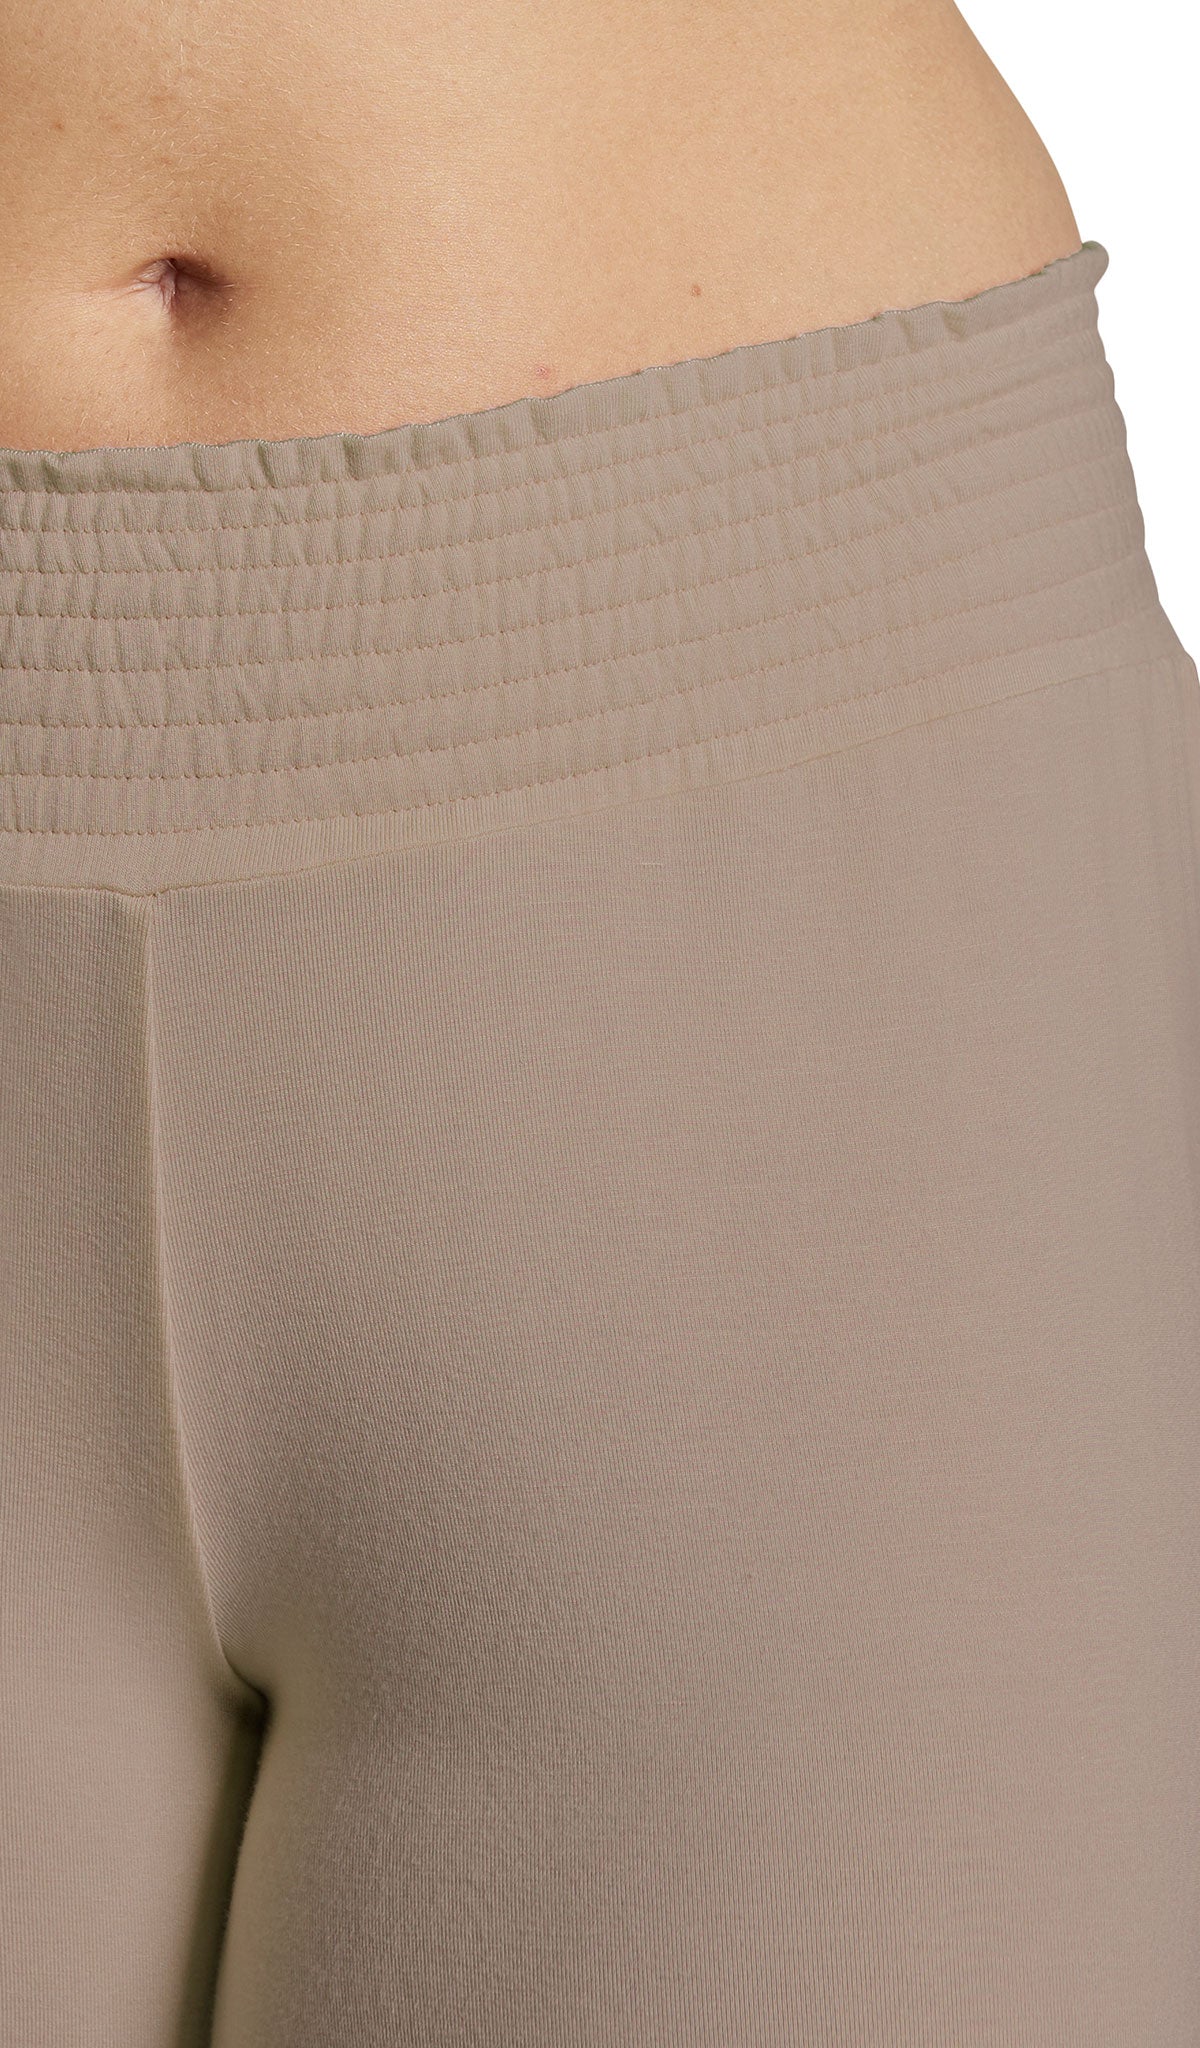 Latte Analise 5-Piece Set, detailed shot of smocked elastic waistband.